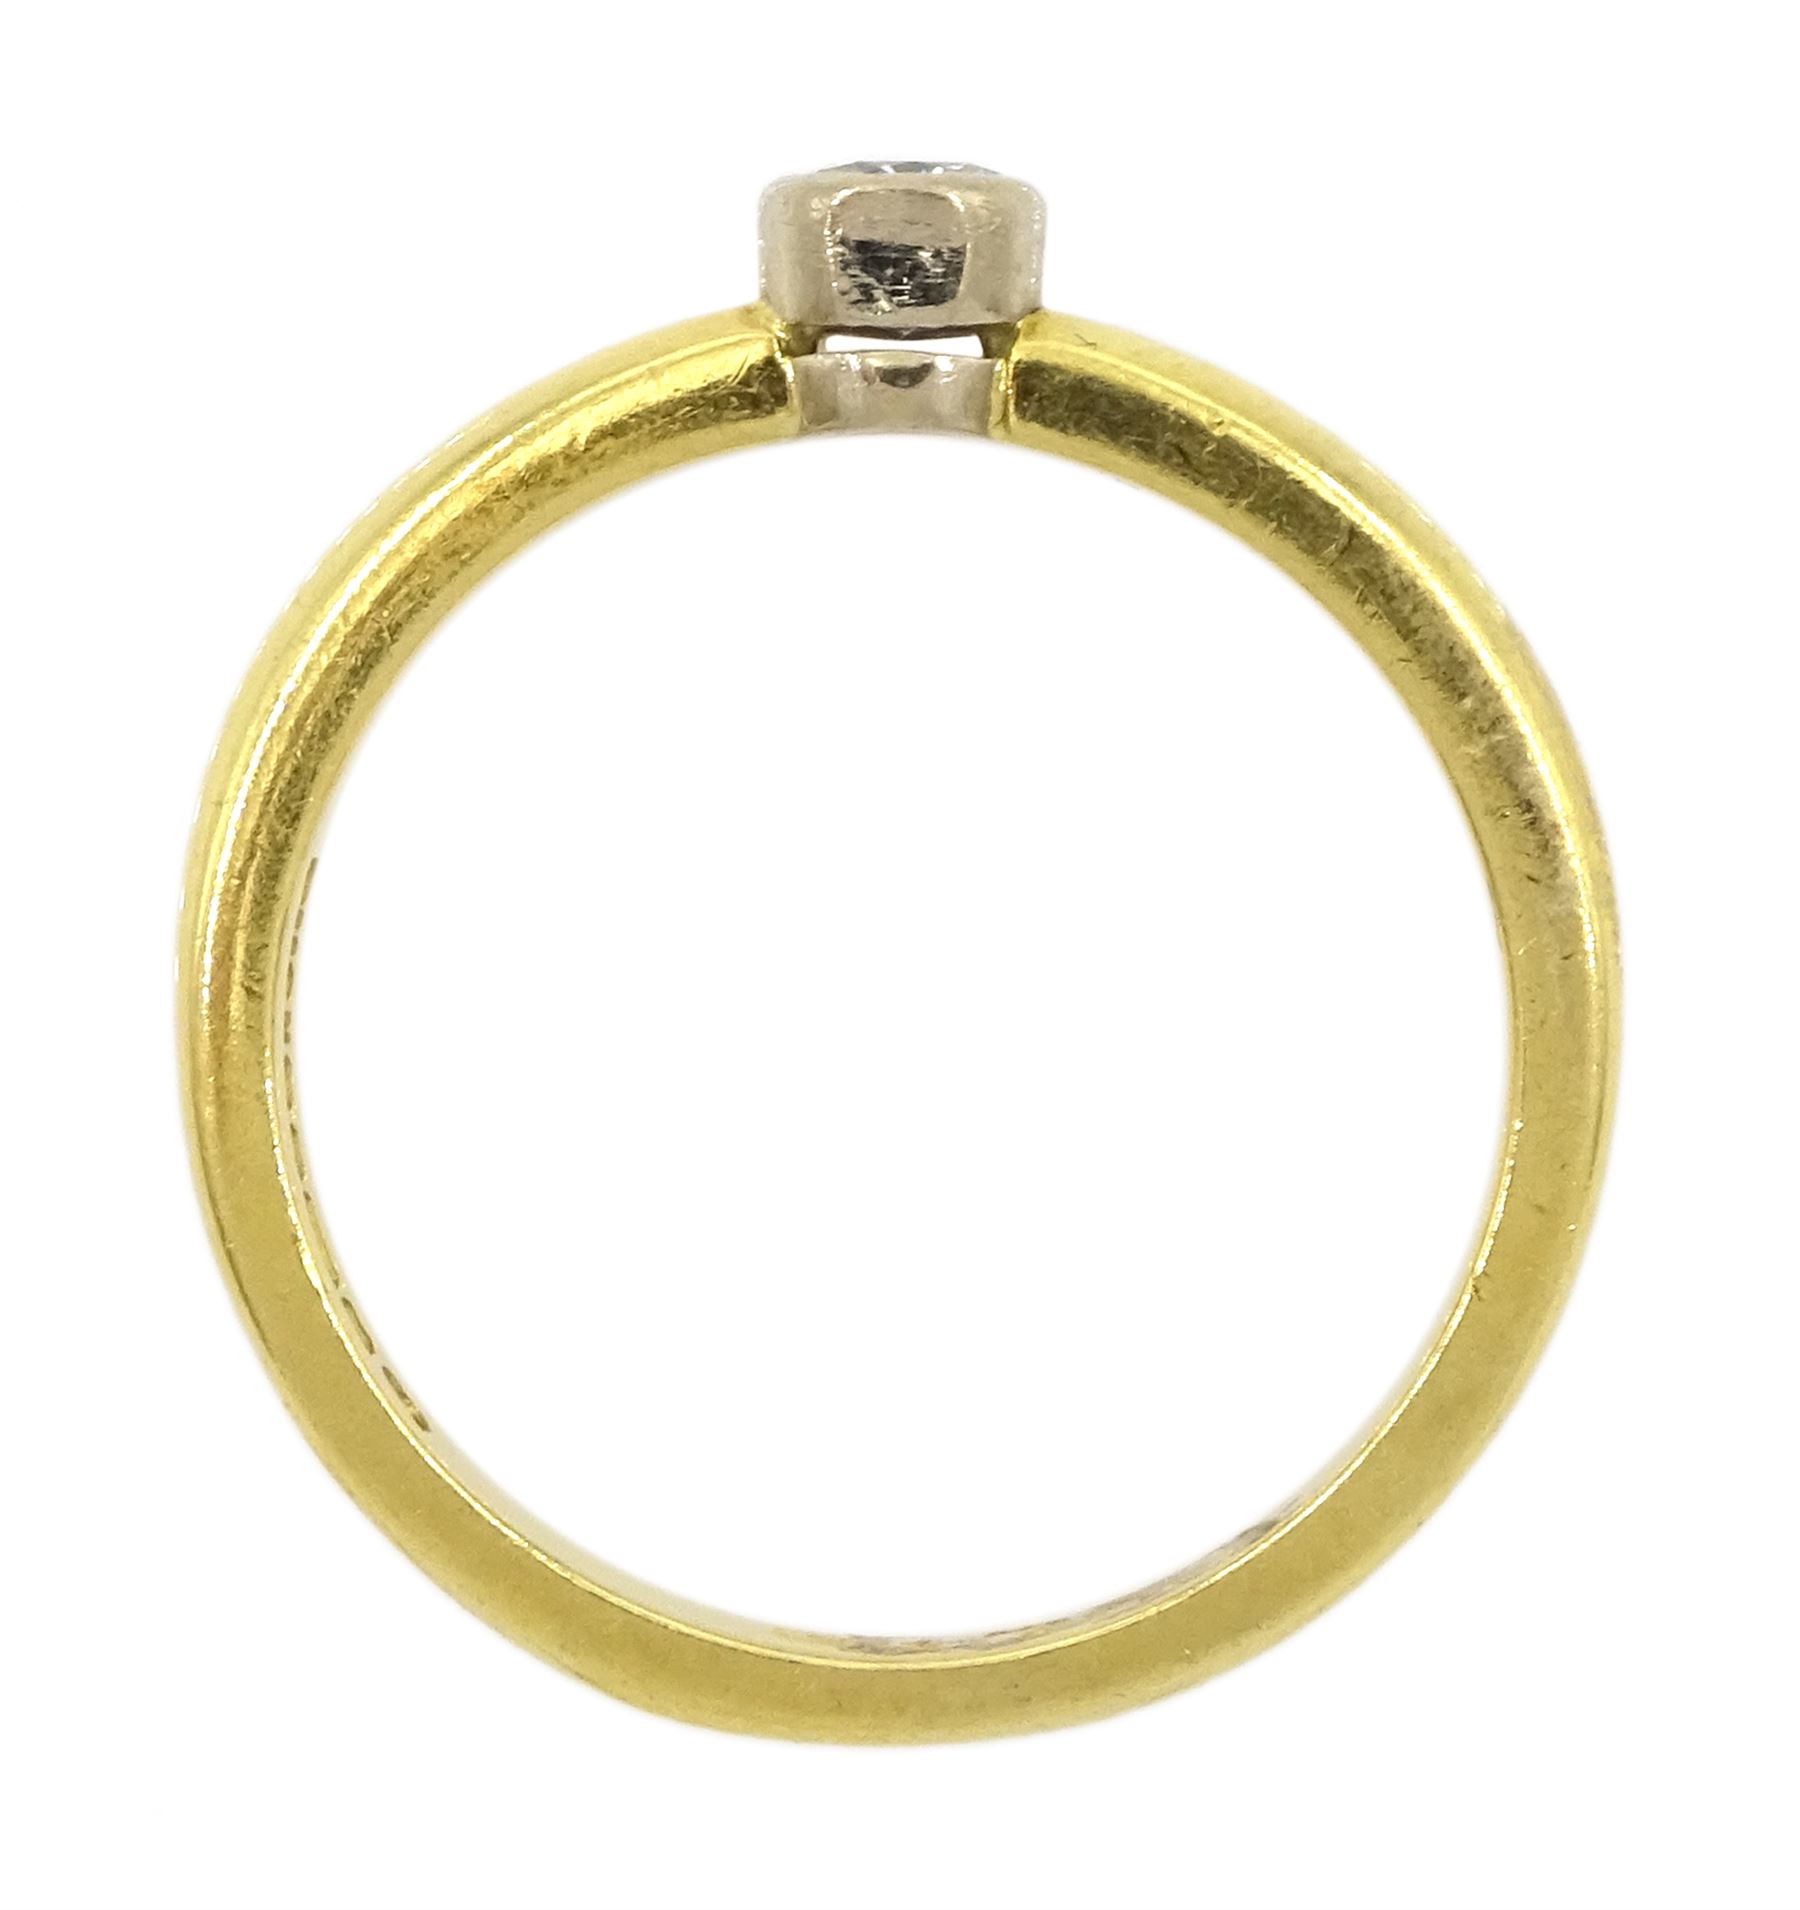 18ct gold bezel set single stone diamond ring - Image 4 of 4